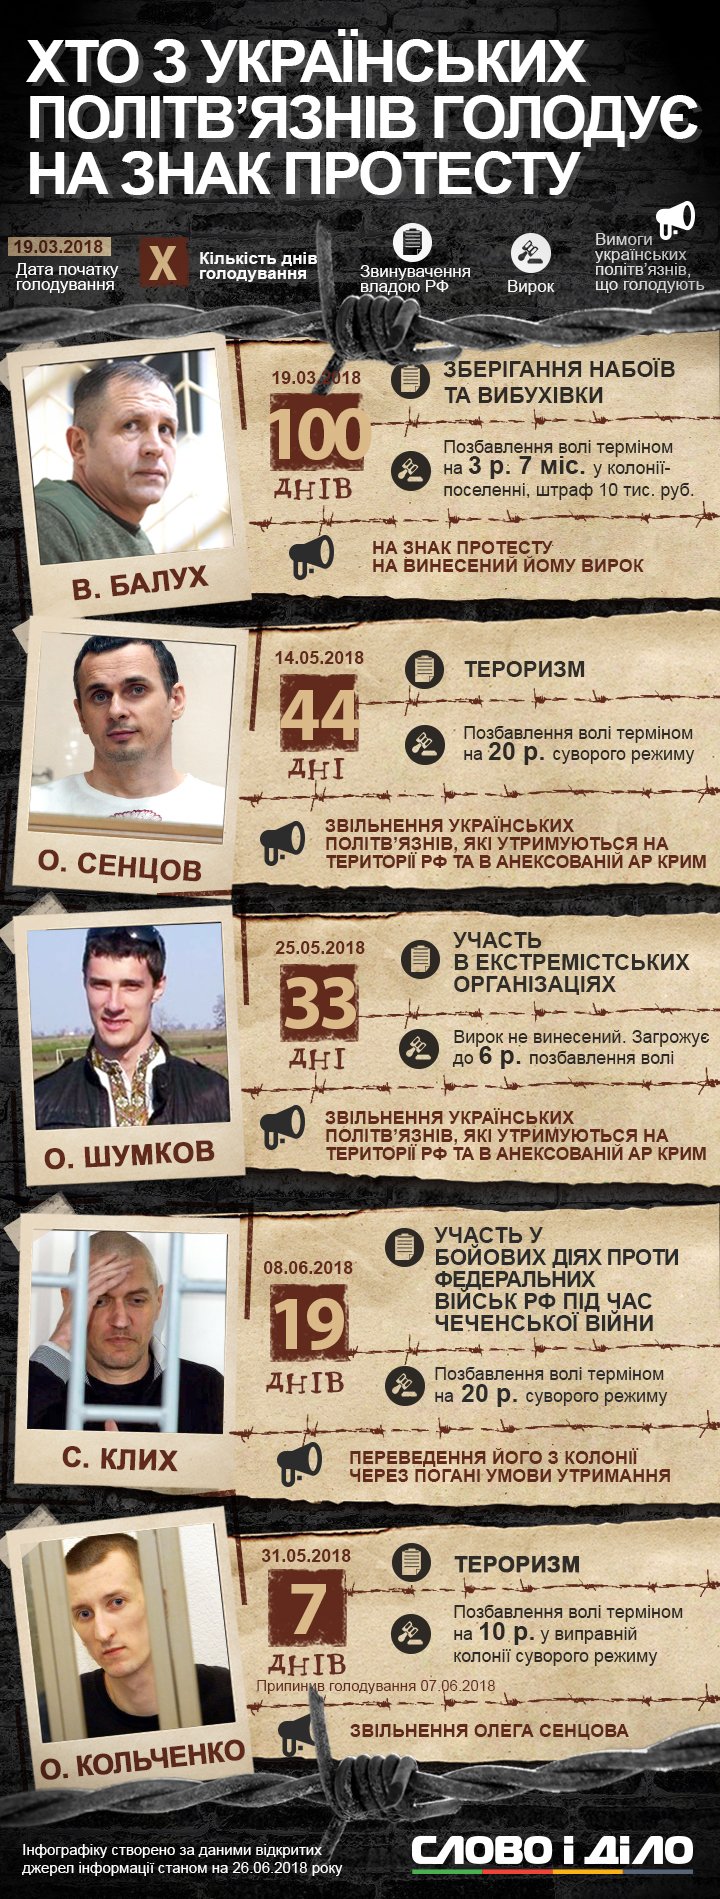 Четверо українців, незаконно утримуваних у Росії, зараз продовжують голодування. Раніше тиждень голодував Олександр Кольченко.